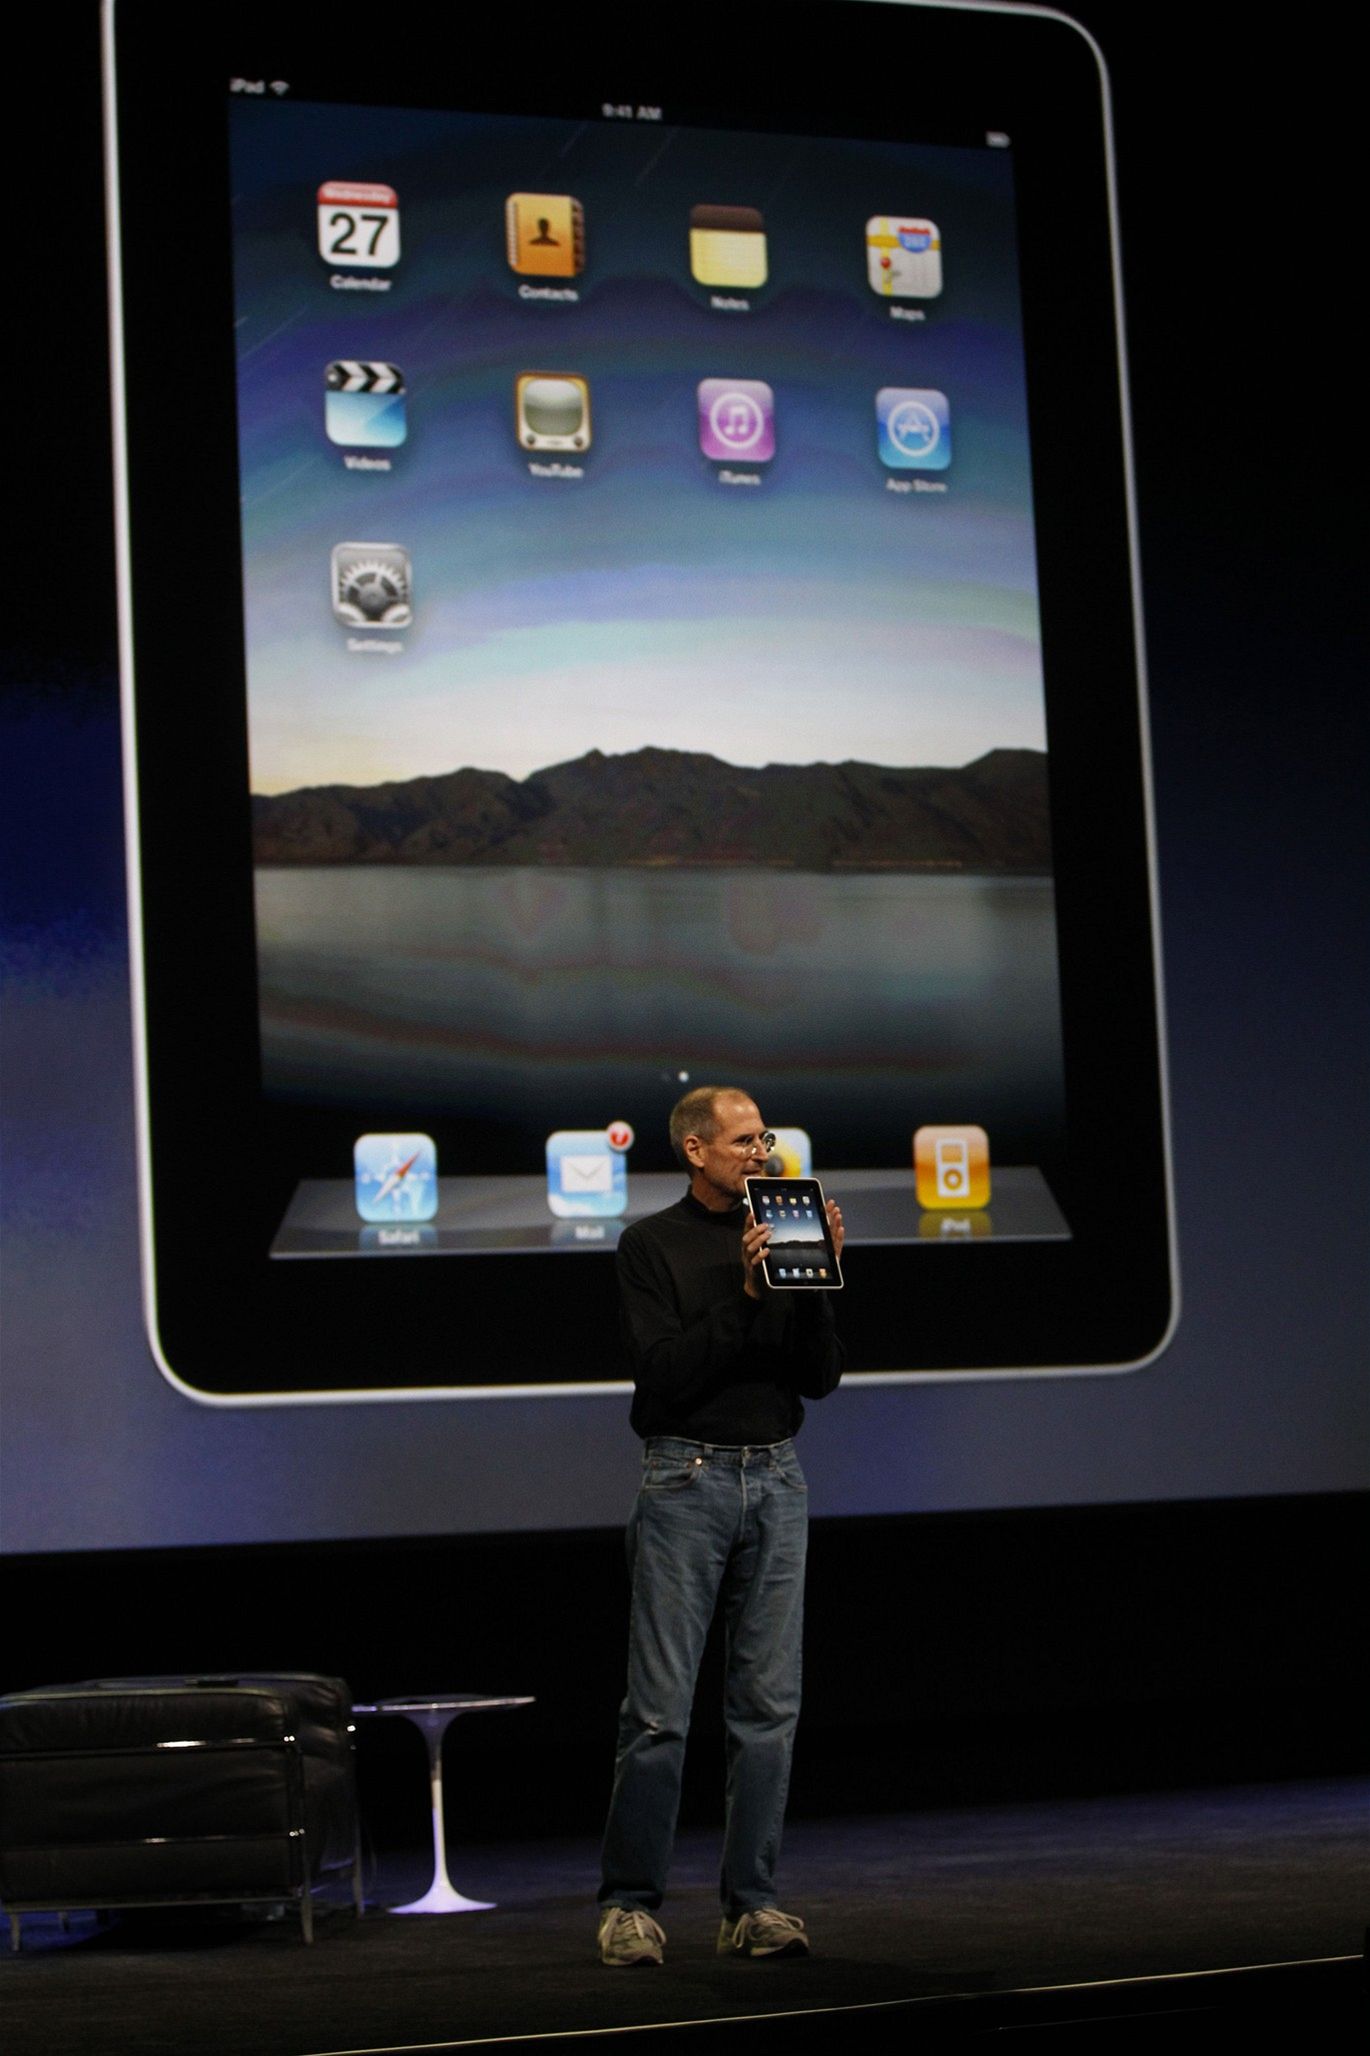 Tehdejší šéf Applu Steve Jobs během představování tabletu iPad